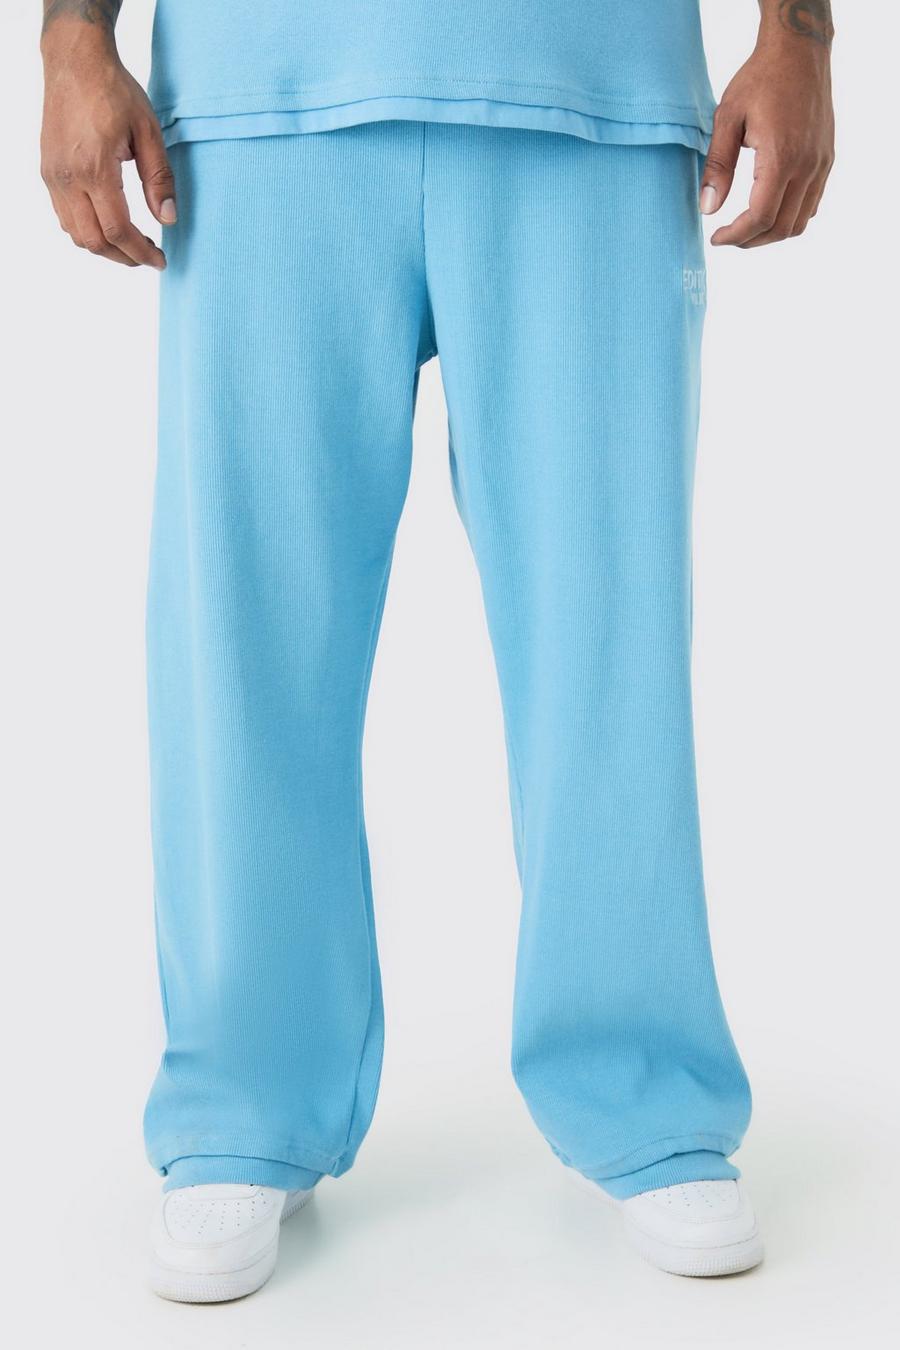 Pantalón deportivo Plus EDITION recto de canalé grueso con abertura en el bajo, Blue